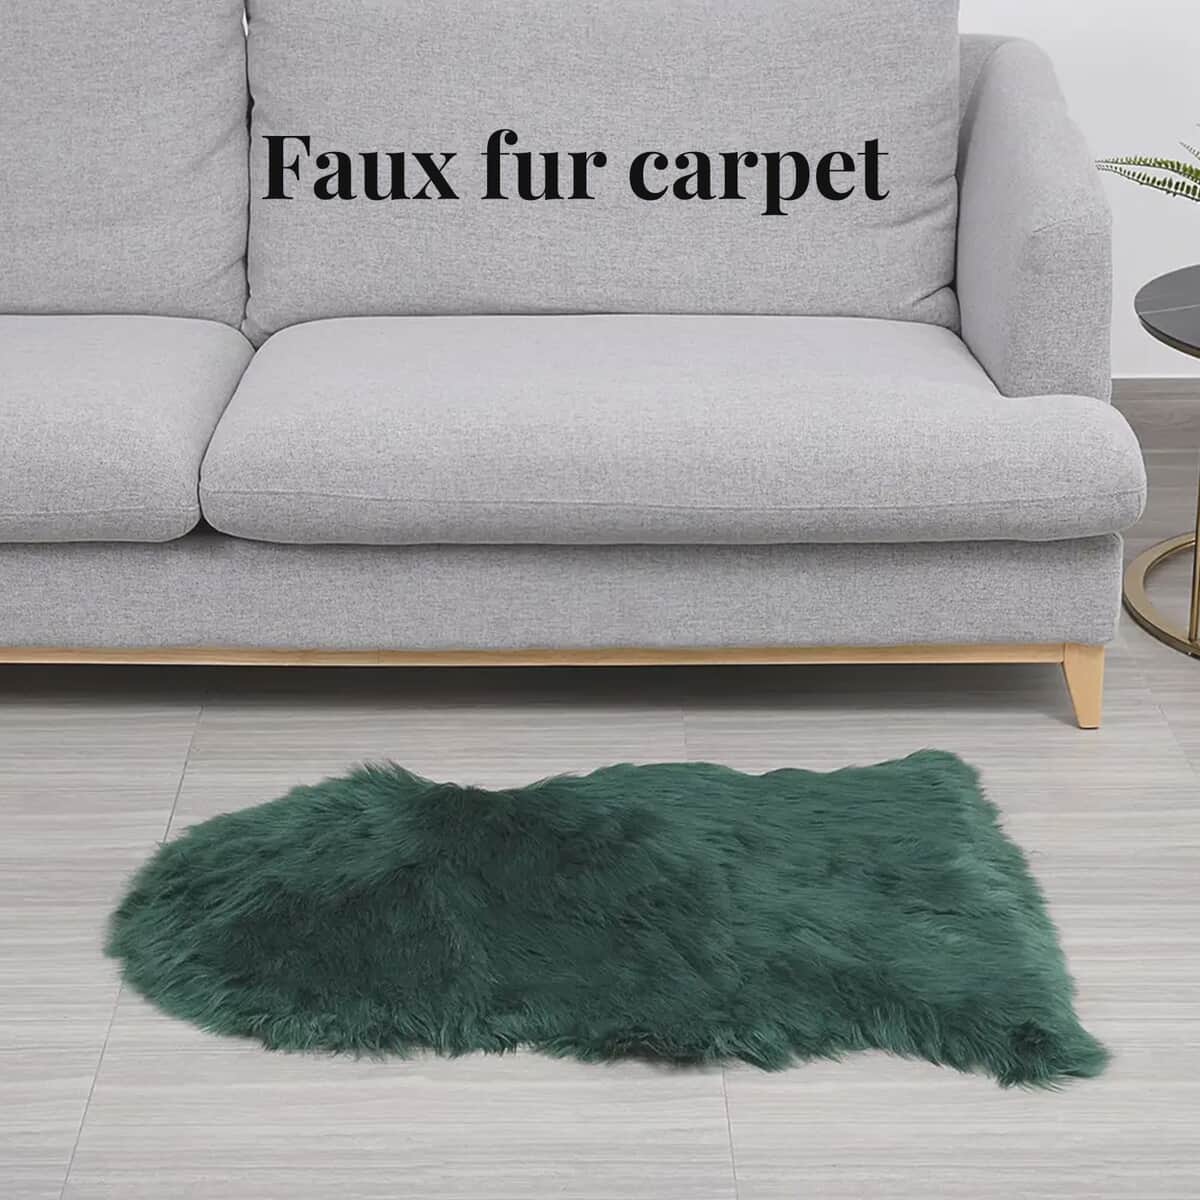 Homesmart Forest Green Faux Fur Carpet, Anti Skid Ultra Soft Wrinkle Resistant Faux Fur Fluffy Area Rug for Bedroom Living Room, Bedside Floor Mat image number 2